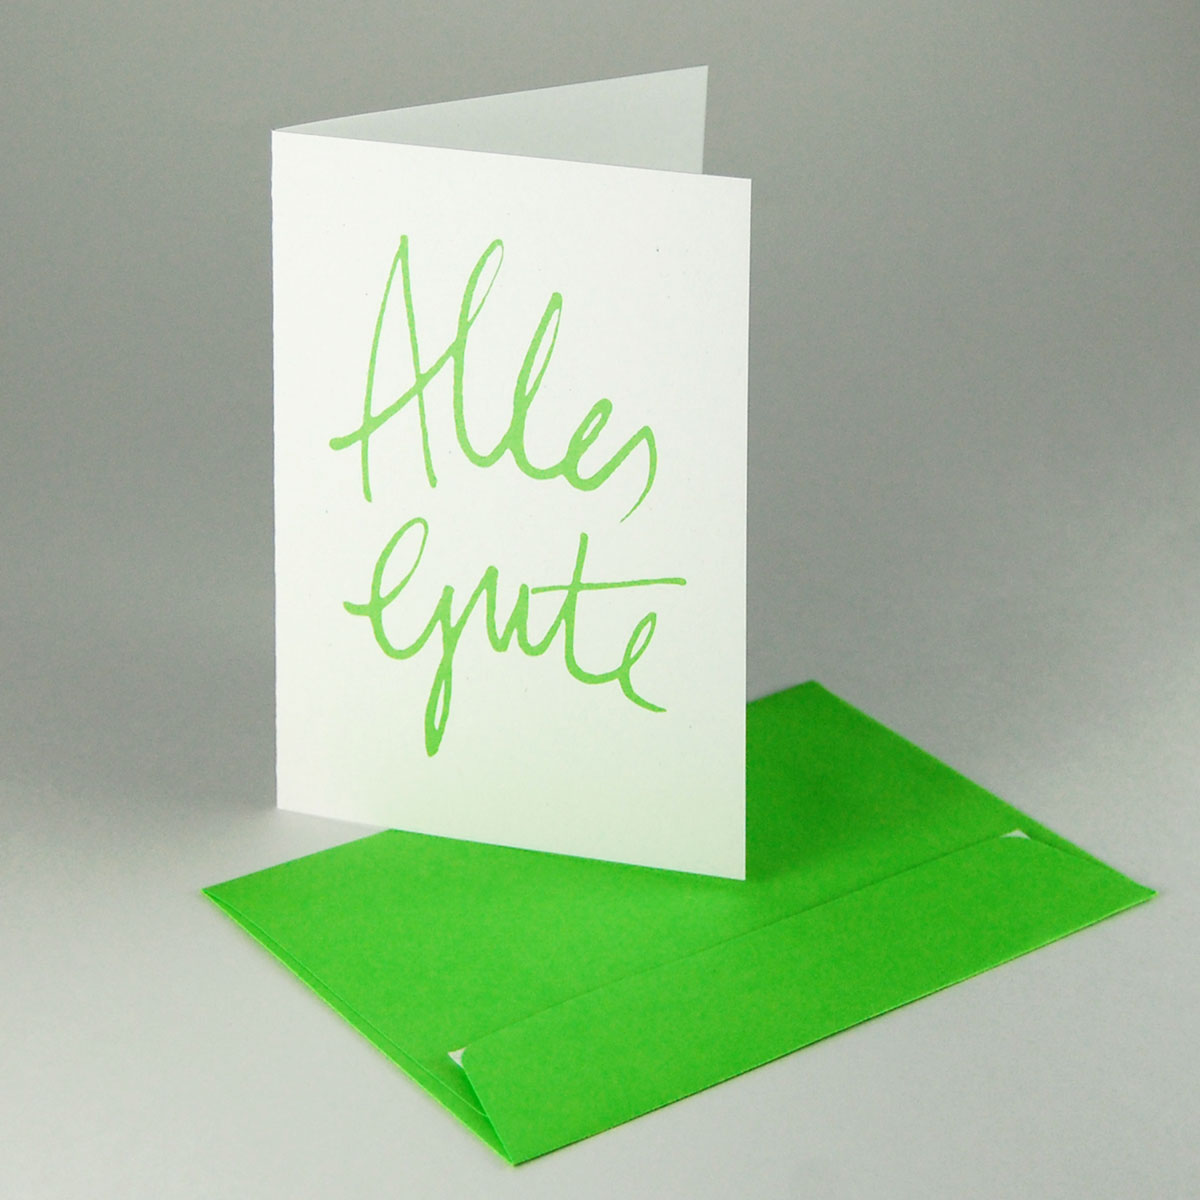 Alles Gute, Recycling-Glückwunschkarte mit grünen Handlettering und grünen Umschlägen